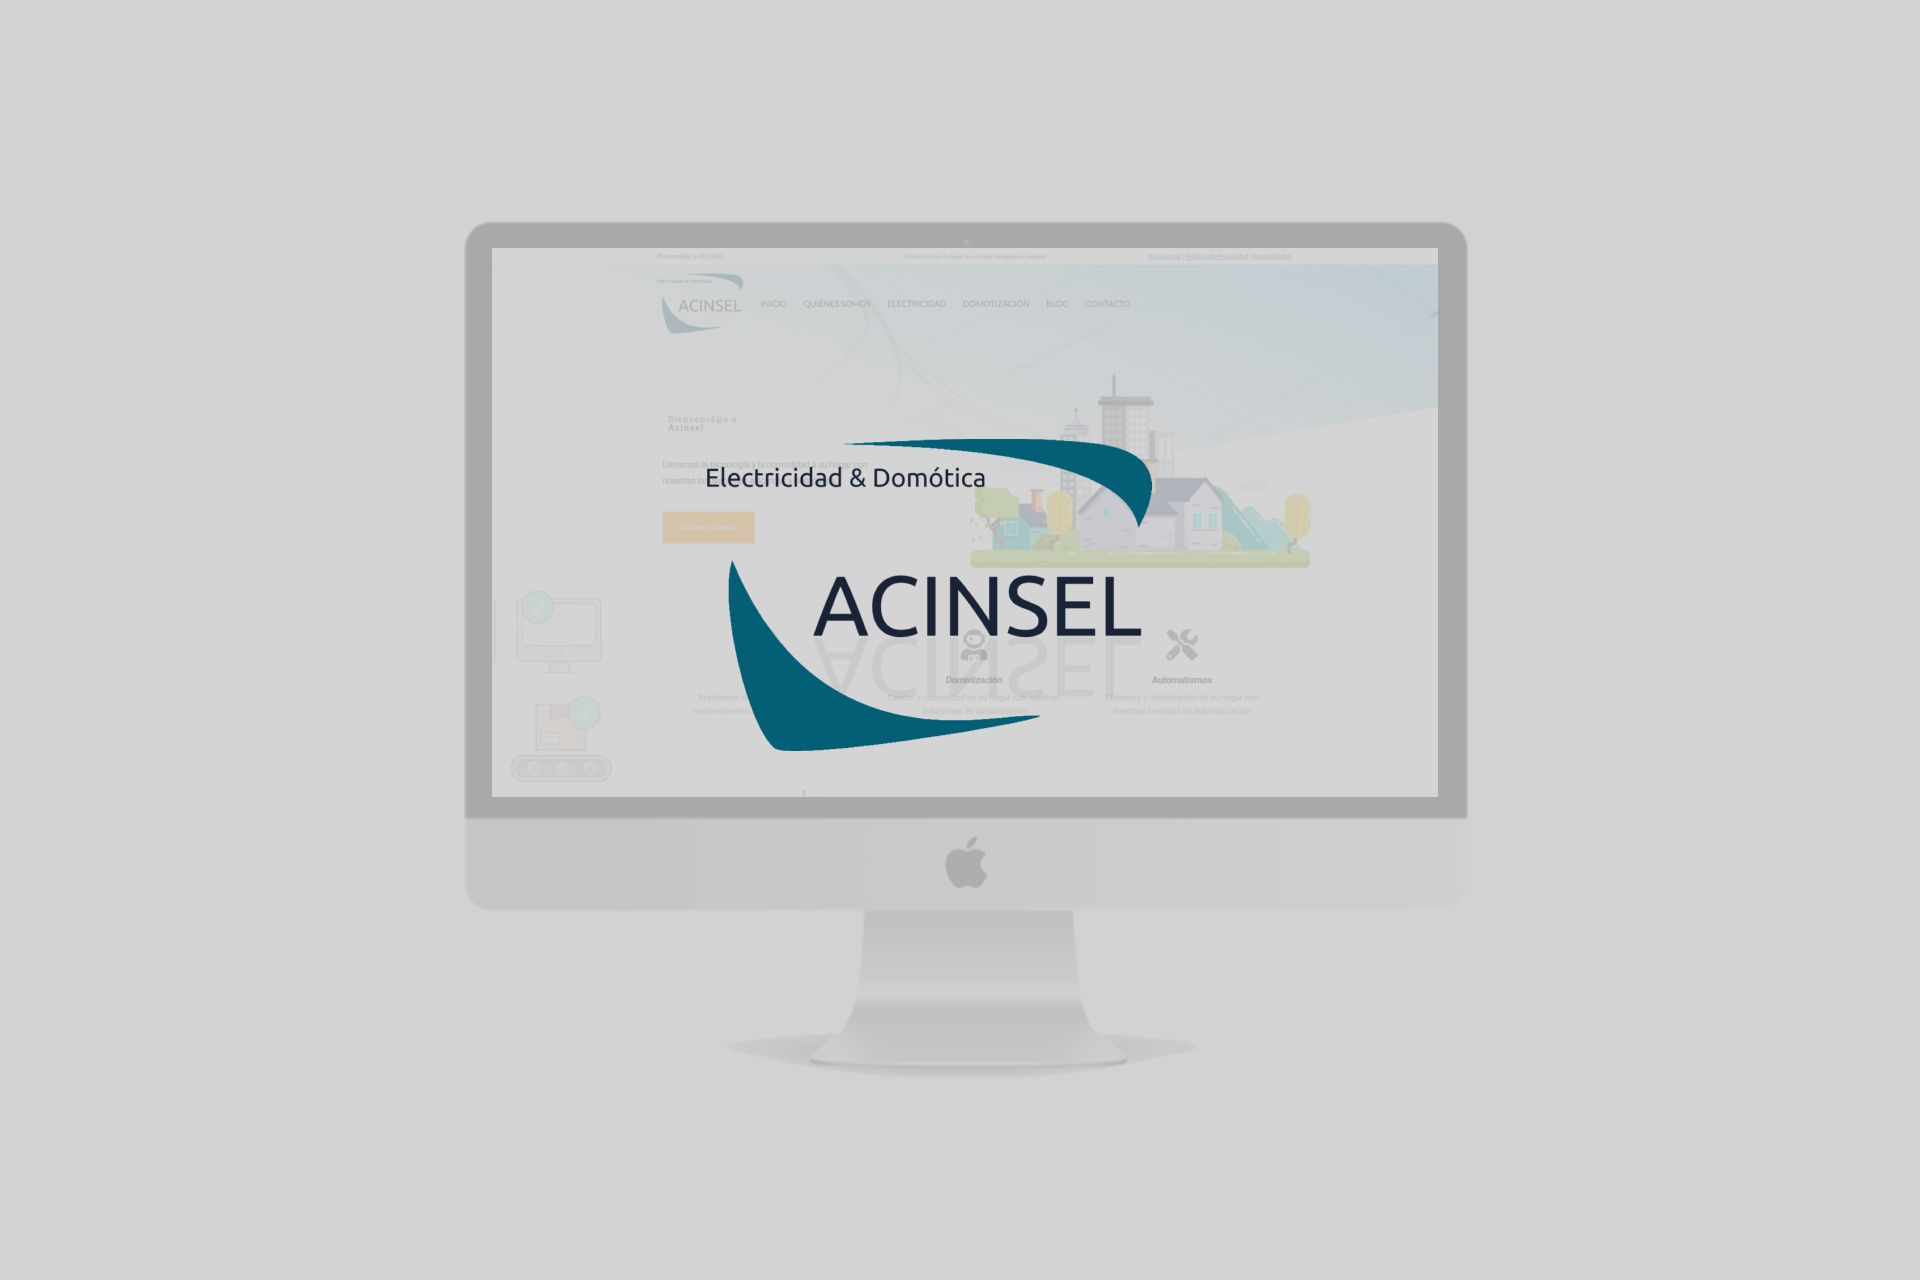 Acinsel